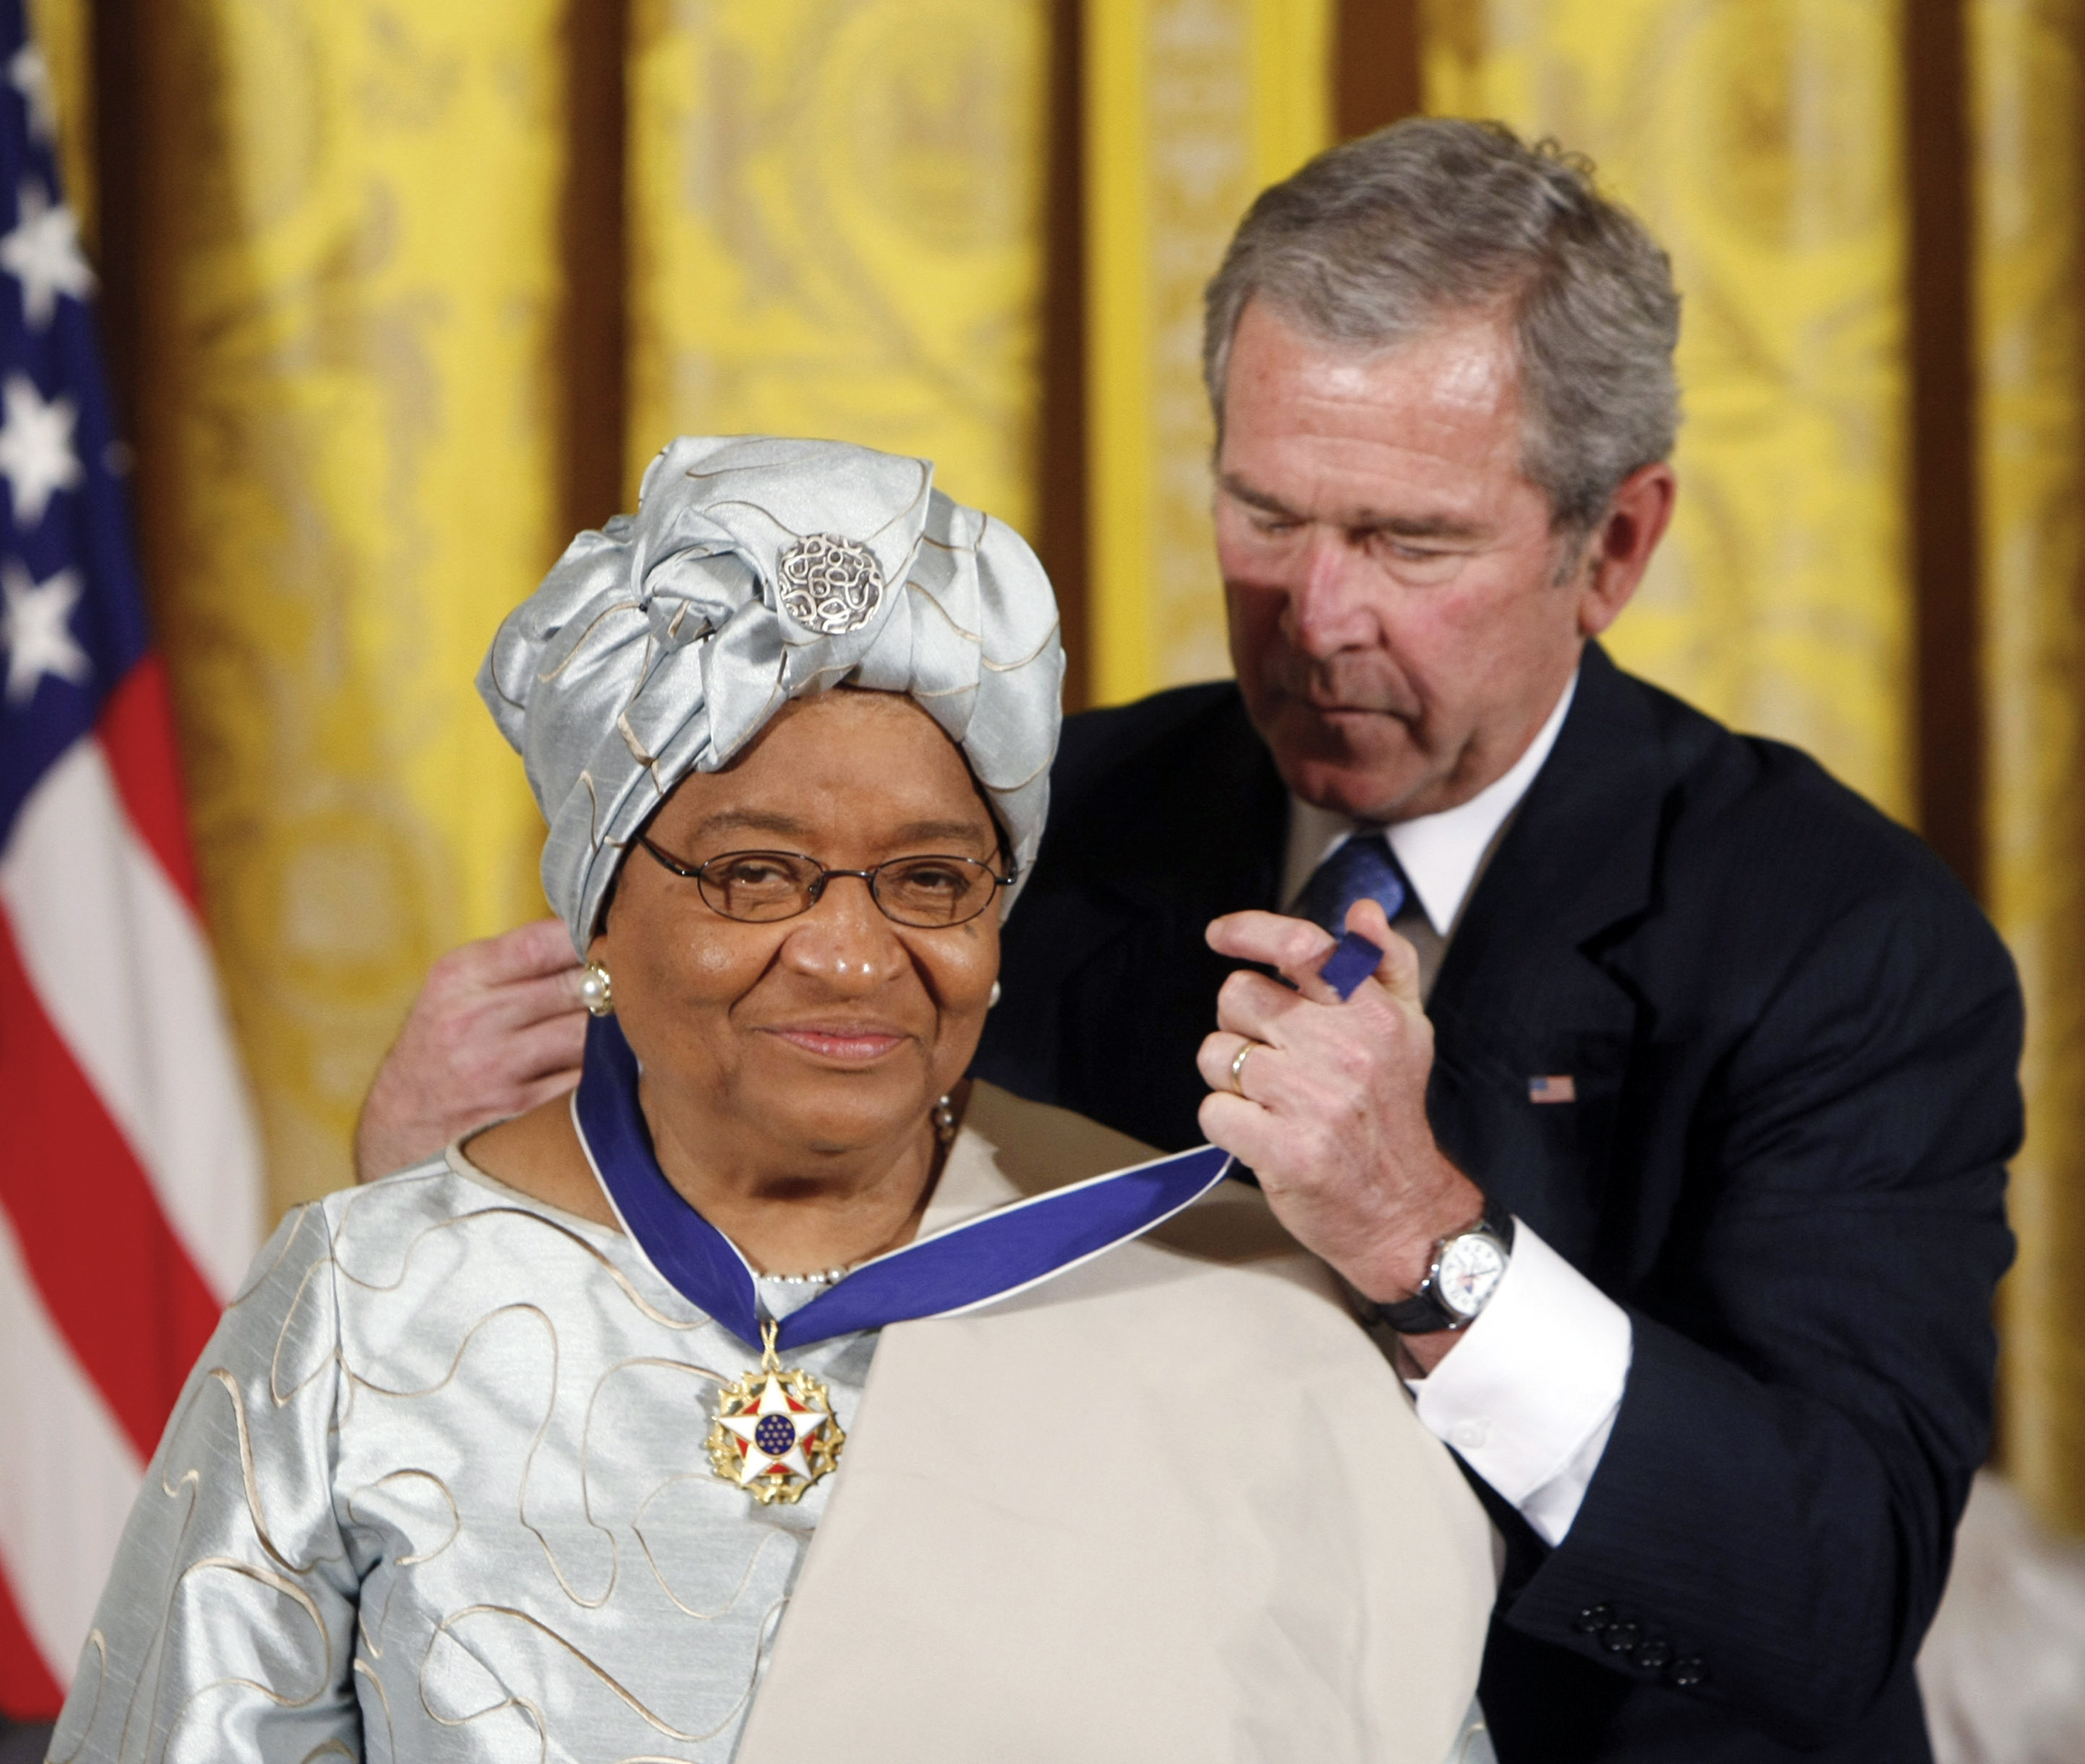 U.Prezydent George W. Bush wręcza Prezydencki Medal Wolności prezydentowi Liberii Ellen Johnson Sirleaf podczas ceremonii w Białym Domu w 2005 roku. (AP Images/Gerald Herbert)